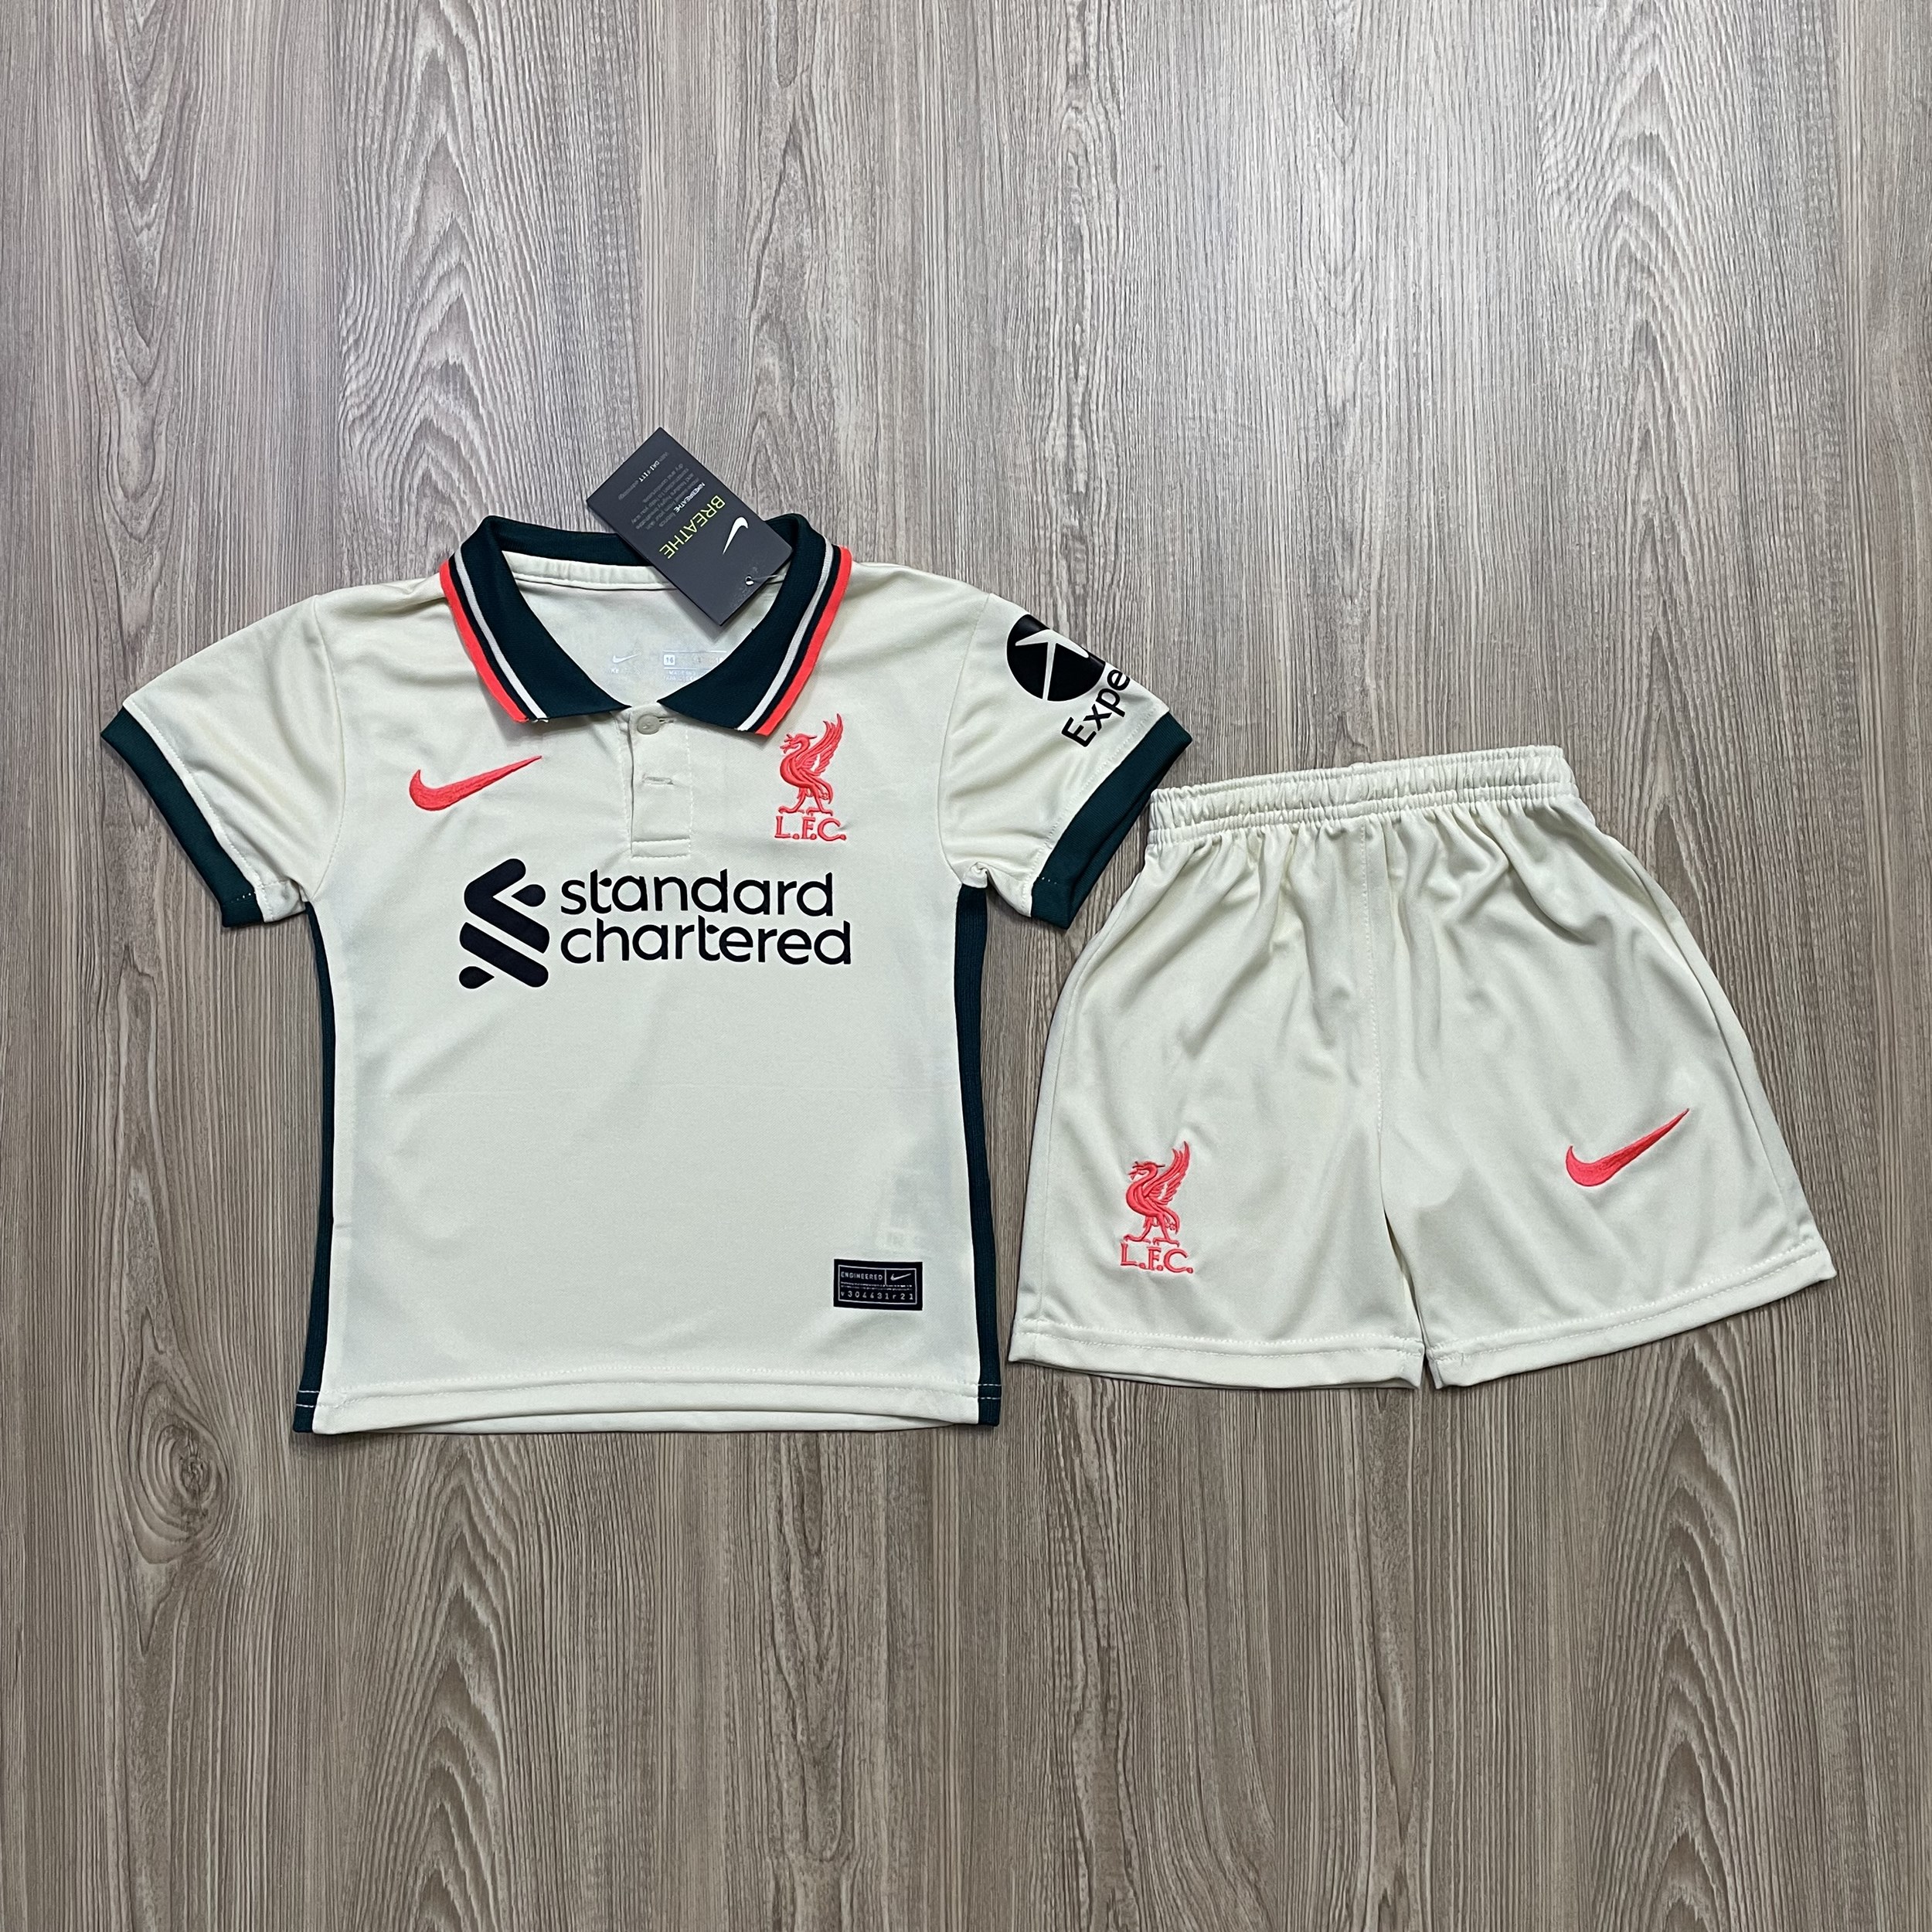 ชุดฟุตบอลเด็ก ชุดบอลเด็ก ชุดกีฬาเด็ก ชุดเด็ก เสื้อทีม Liverpool ซื้อครั้งเดียวได้ทั้งชุด (เสื้อ+กางเกง) ตัวเดียวในราคาส่ง สินค้าเกรด AAA